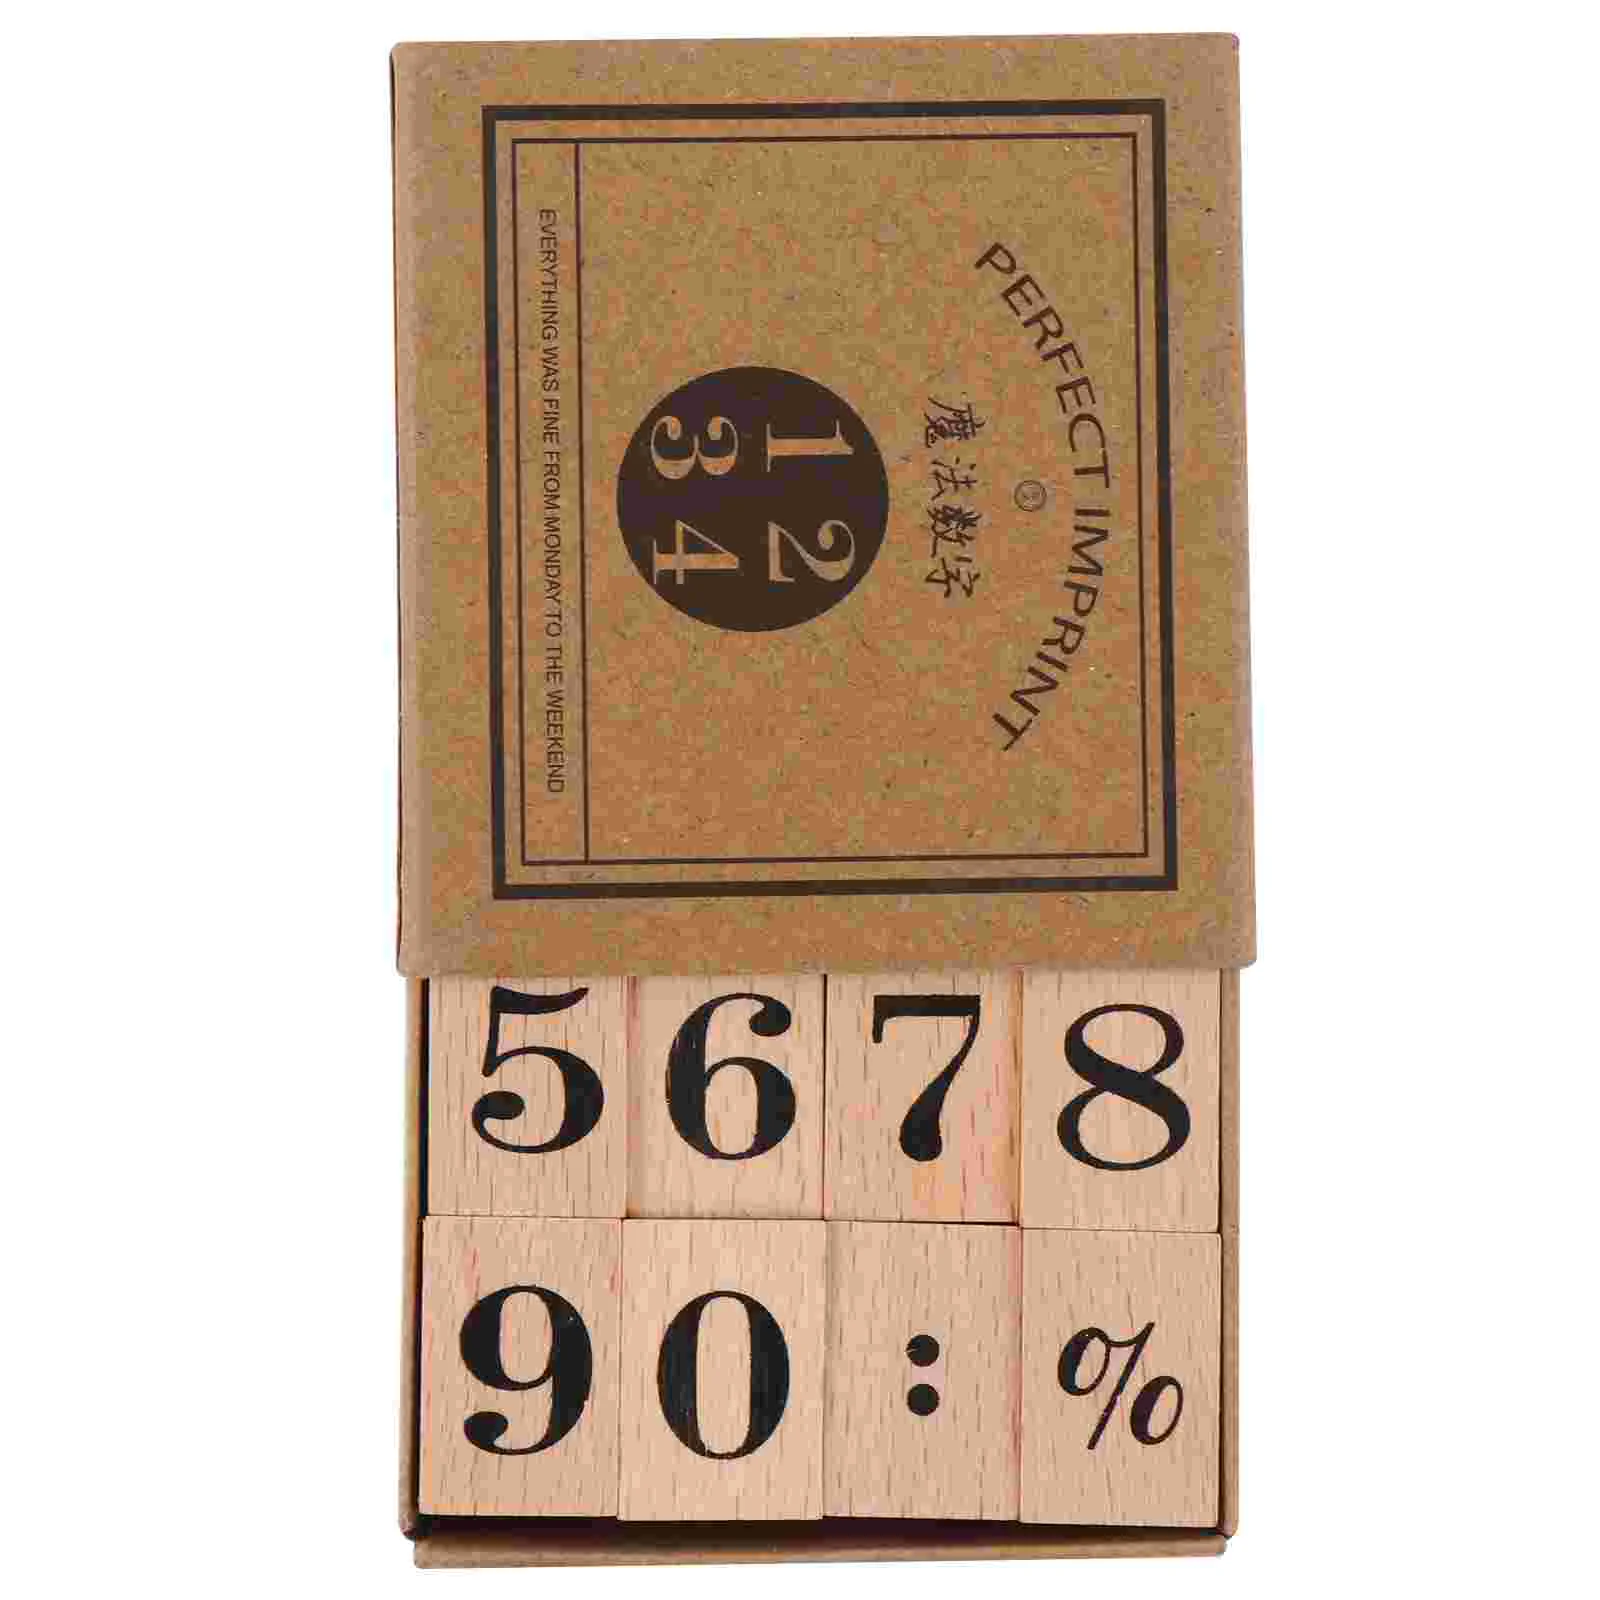 

Деревянный набор штампов DIY штампы для рукоделия, поделки, цифры, арабские цифры, печать, буква, скрапбукинг, старомодный